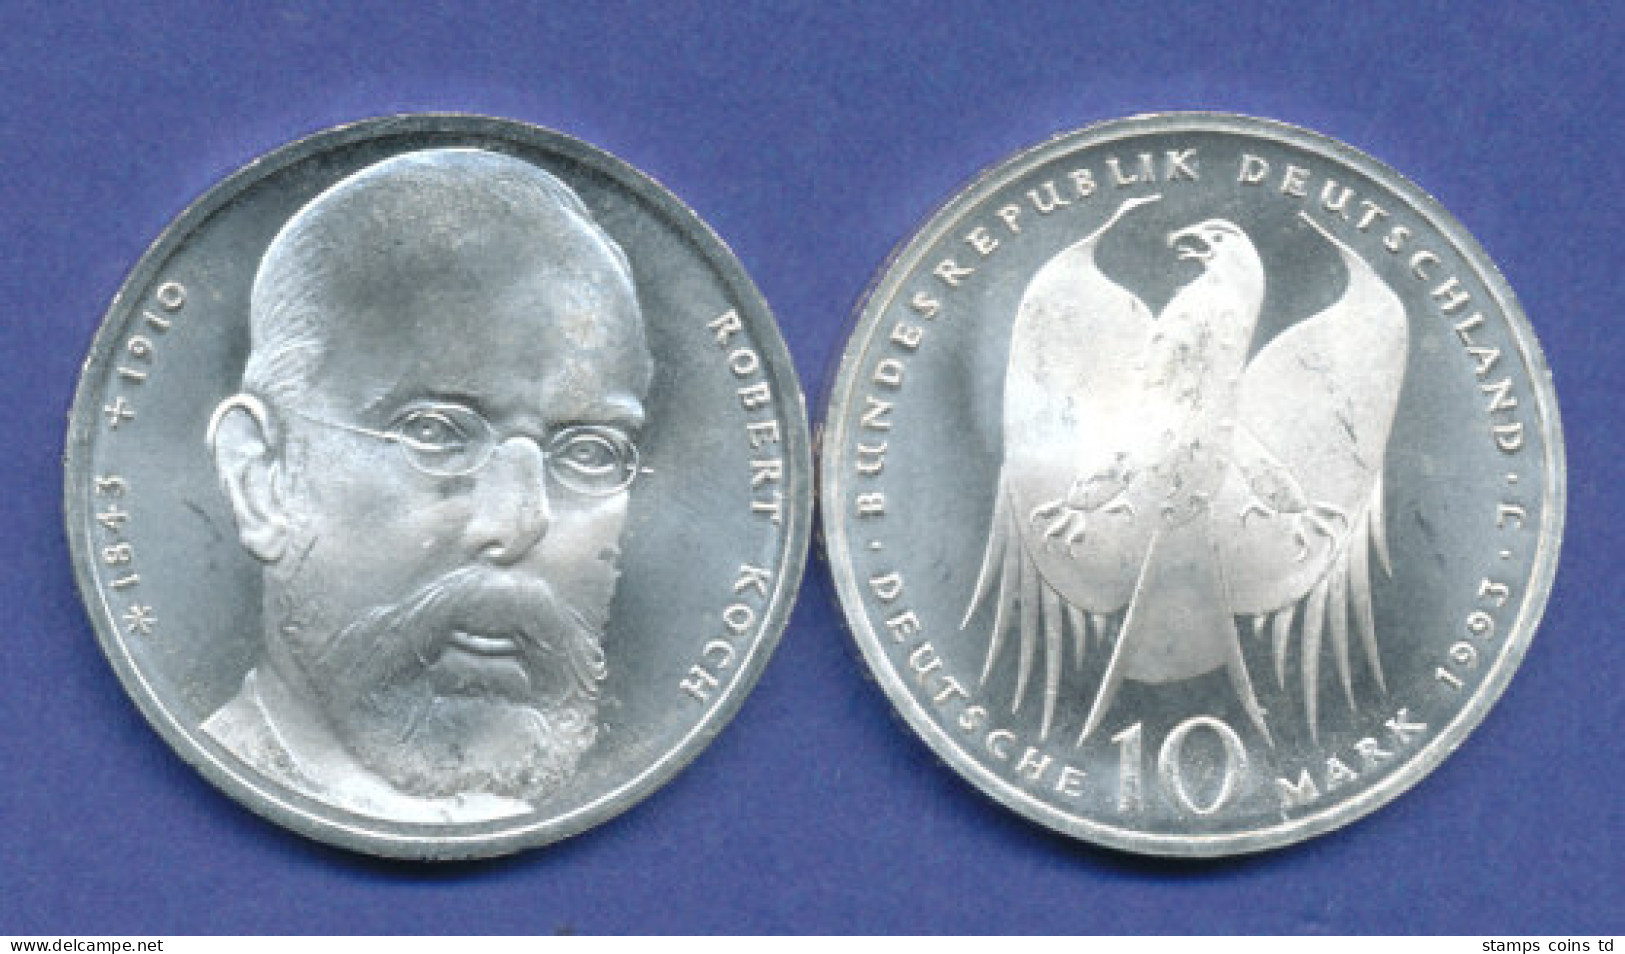 Bundesrepublik 10DM Silber-Gedenkmünze 1994, Robert Koch - 10 Mark